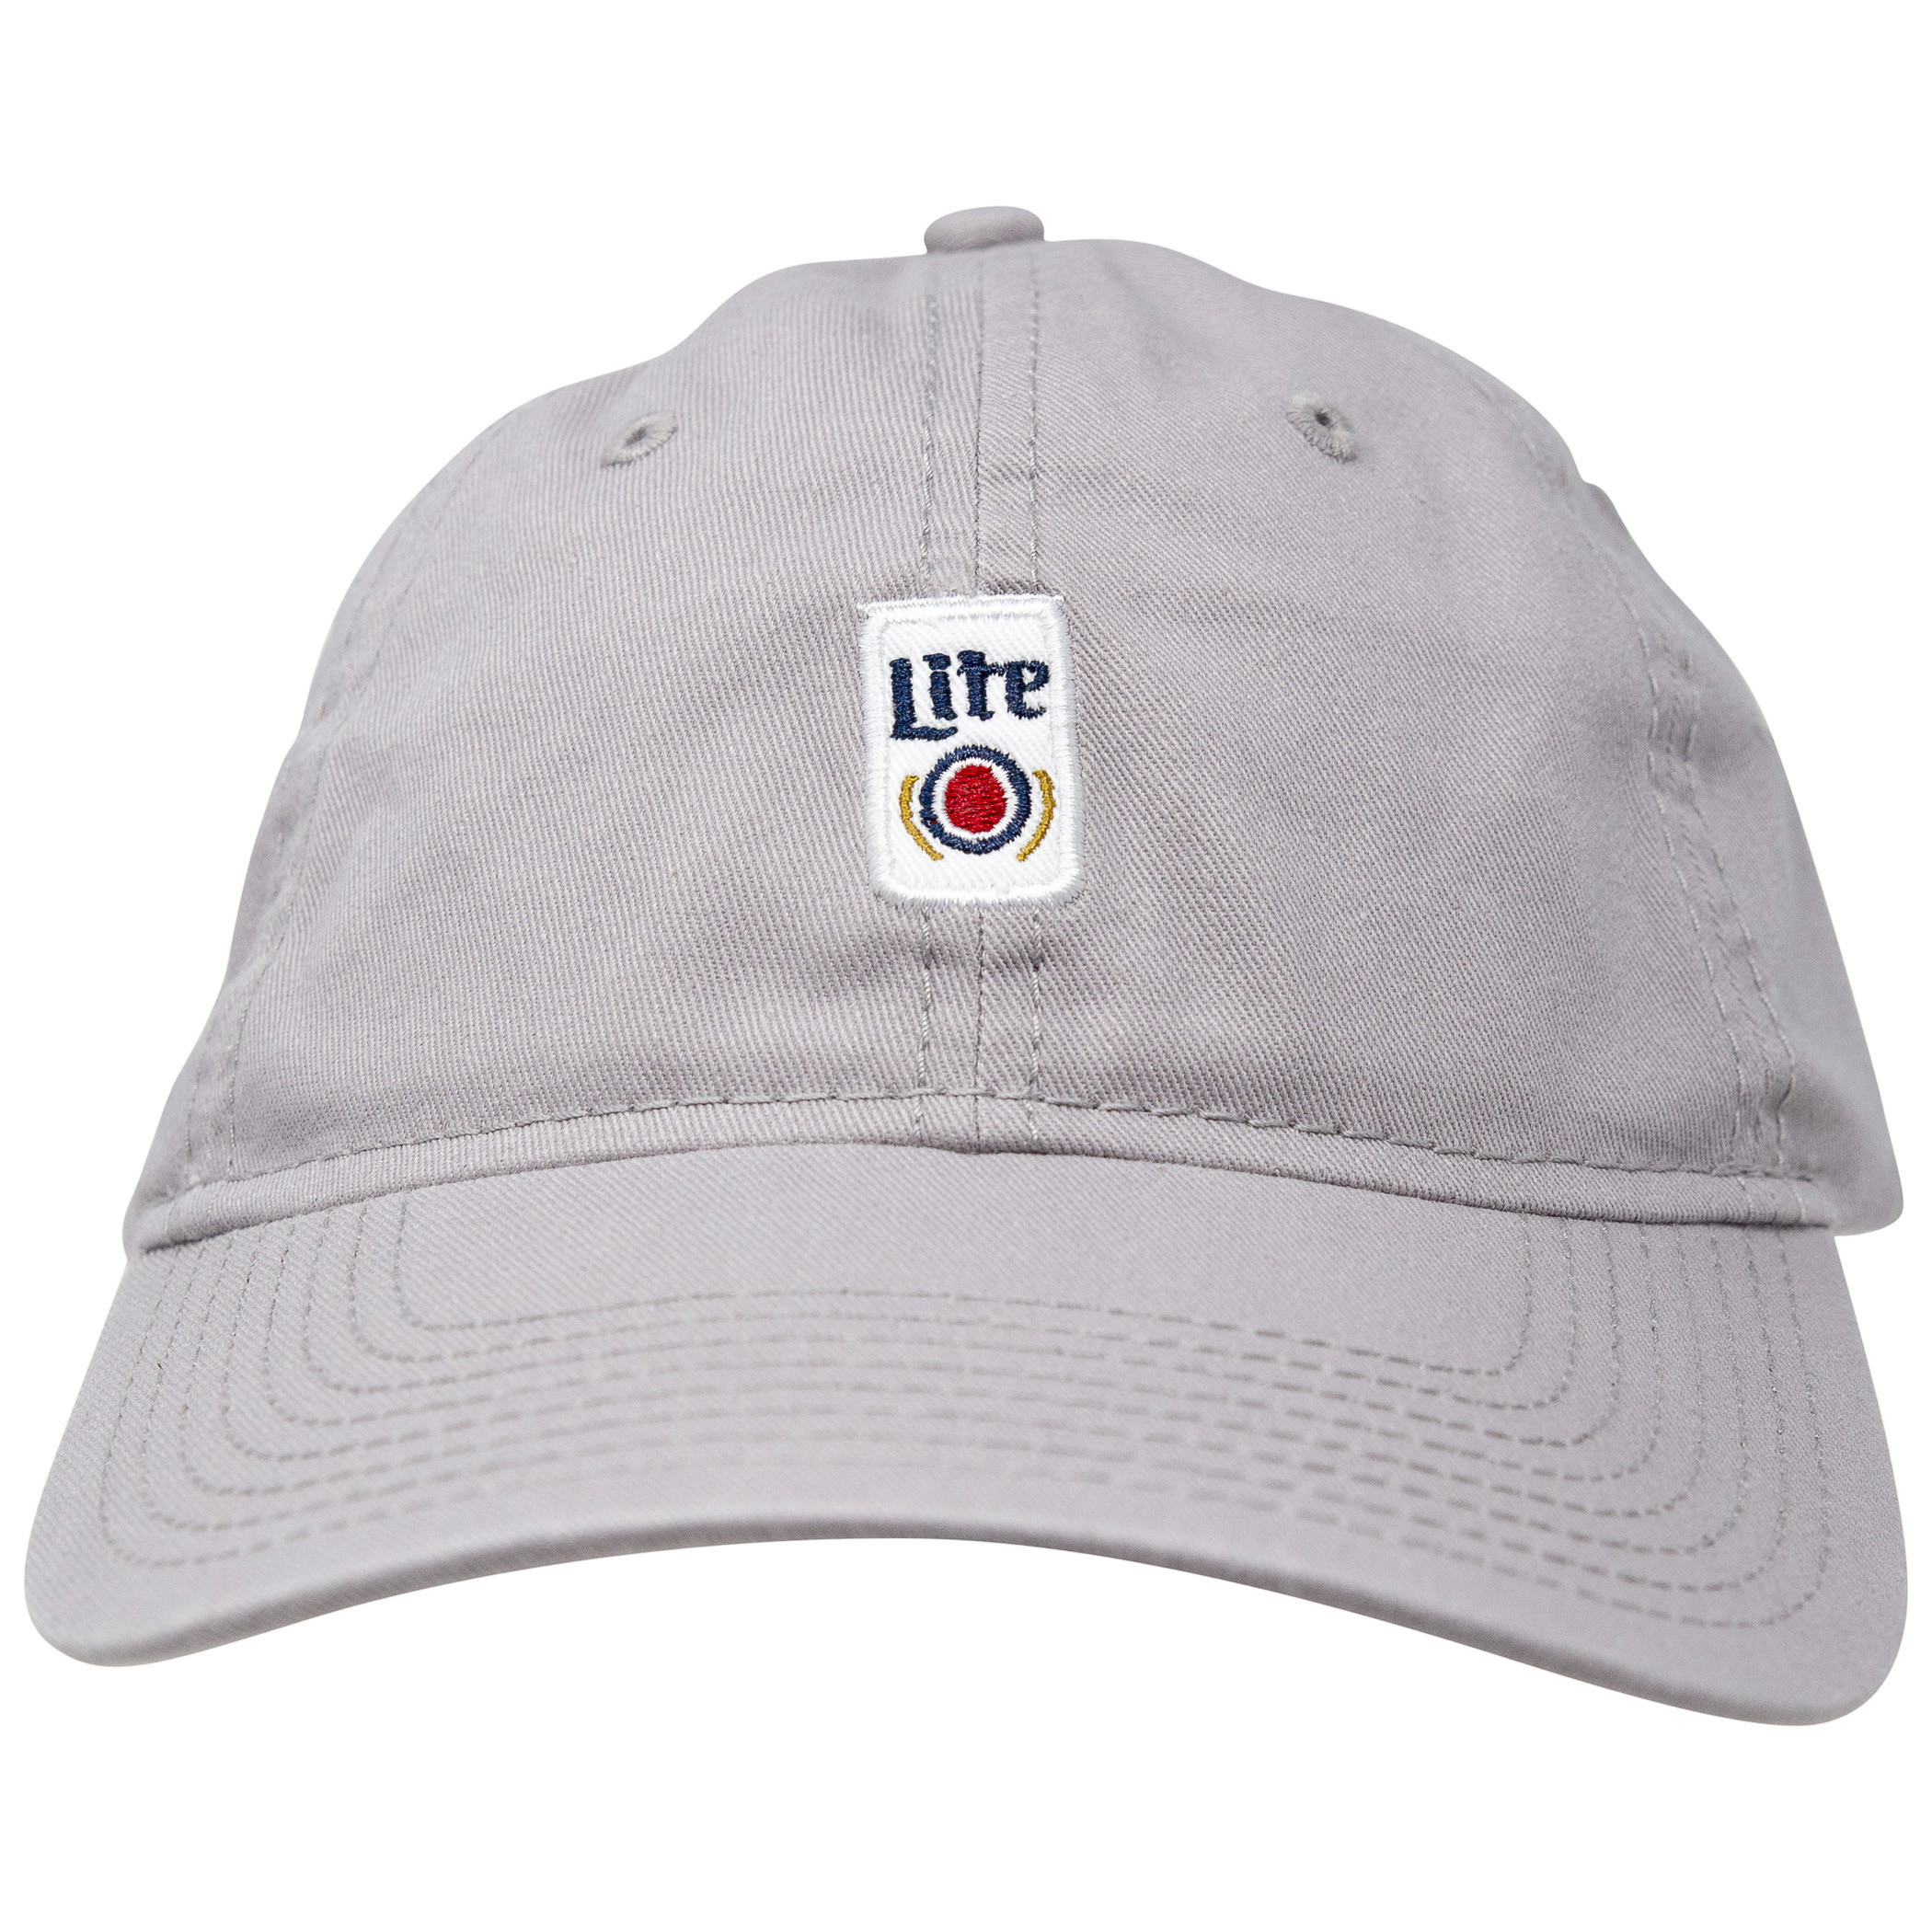 Miller Lite Beer Can Adjustable Strapback Hat